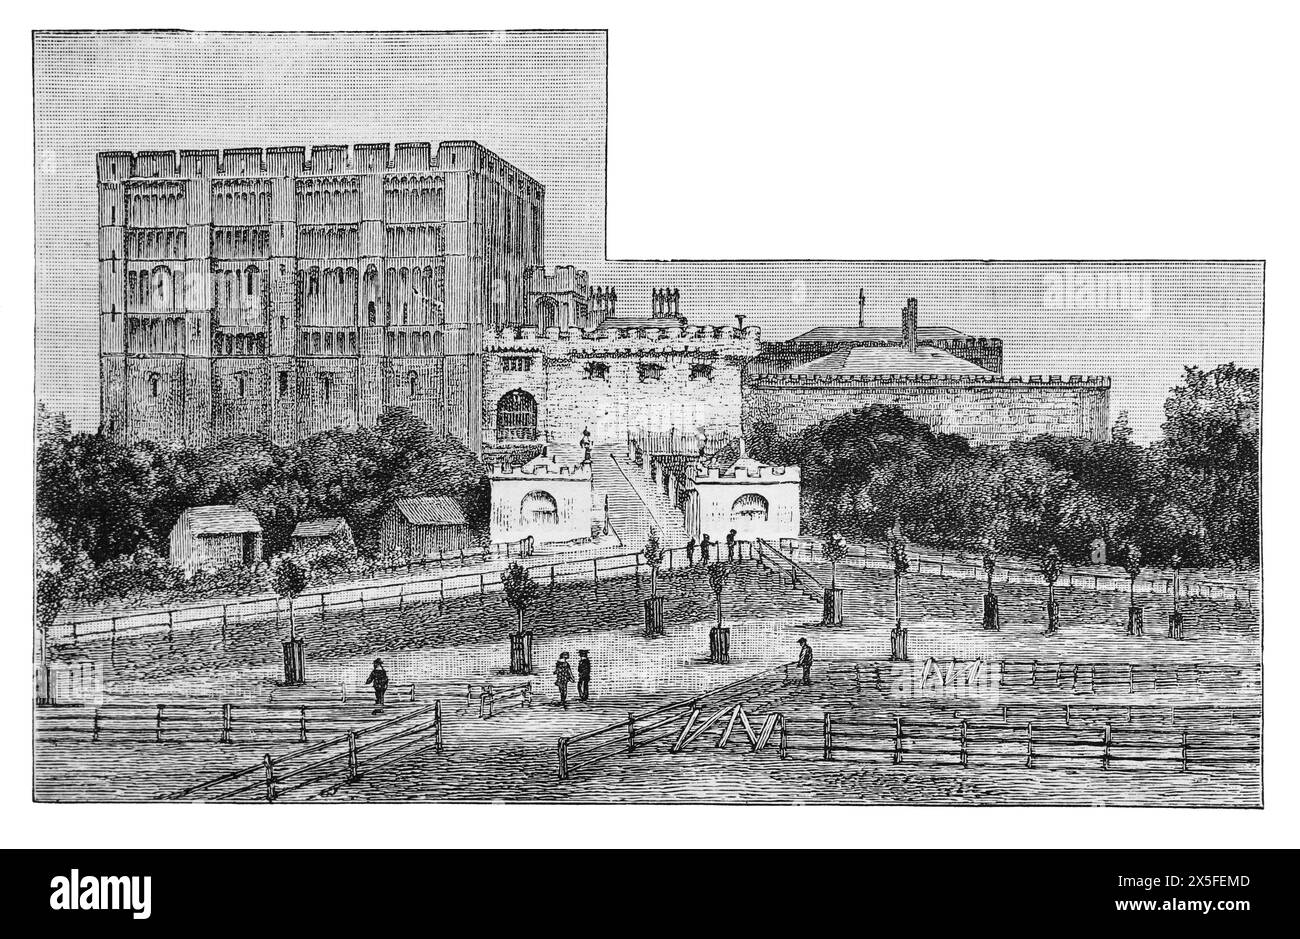 Norwich Castle, wie es im 19. Jahrhundert entstanden wäre. Schwarz-weiß-Illustration aus unserem eigenen Land Band III, veröffentlicht von Cassell, Petter, Galpin & Co. Im späten 19. Jahrhundert. Stockfoto